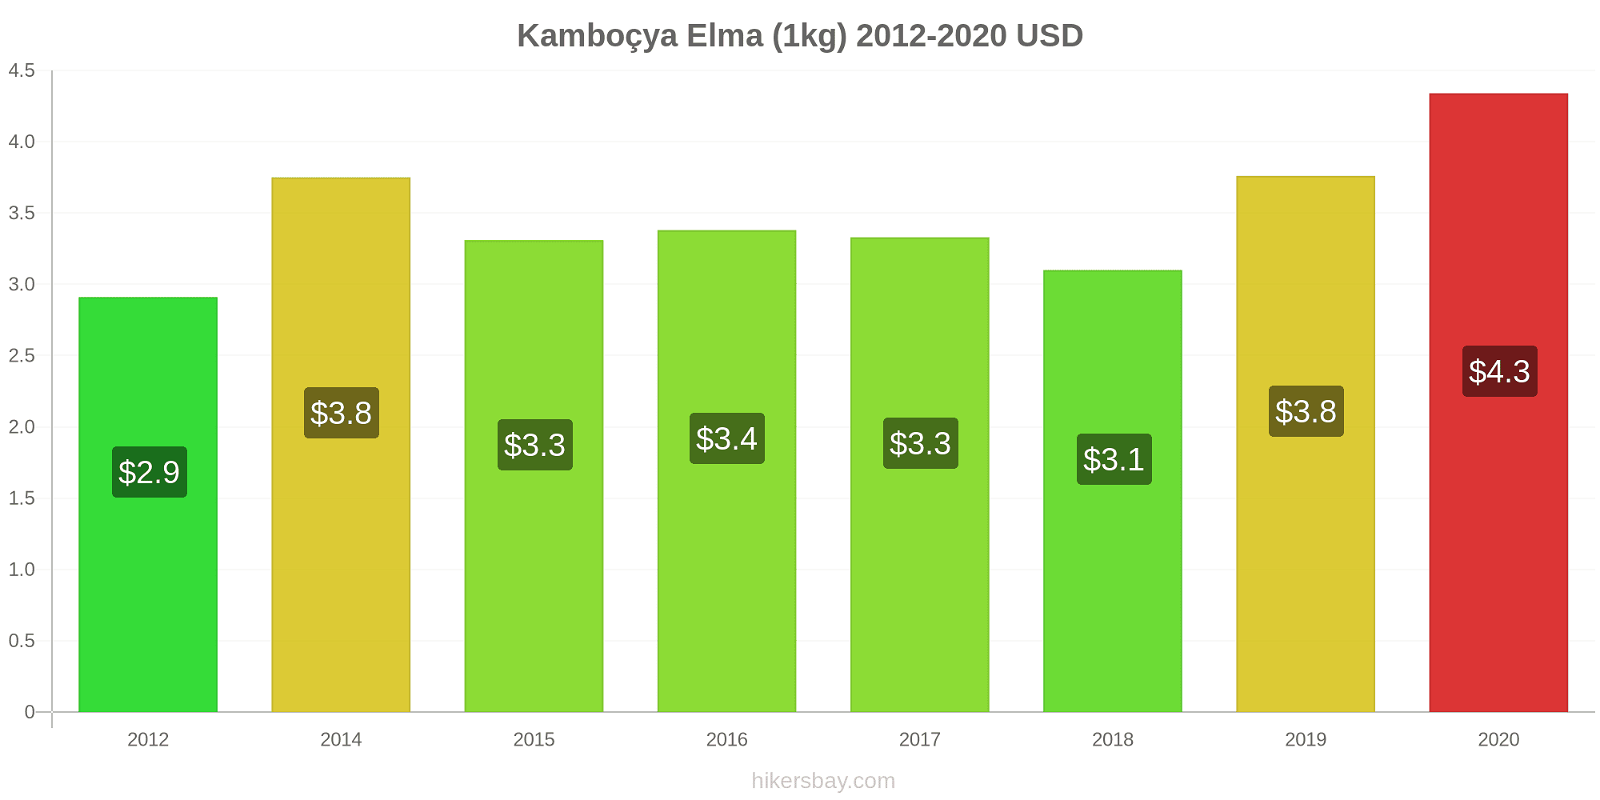 Kamboçya fiyat değişiklikleri Elma (1kg) hikersbay.com